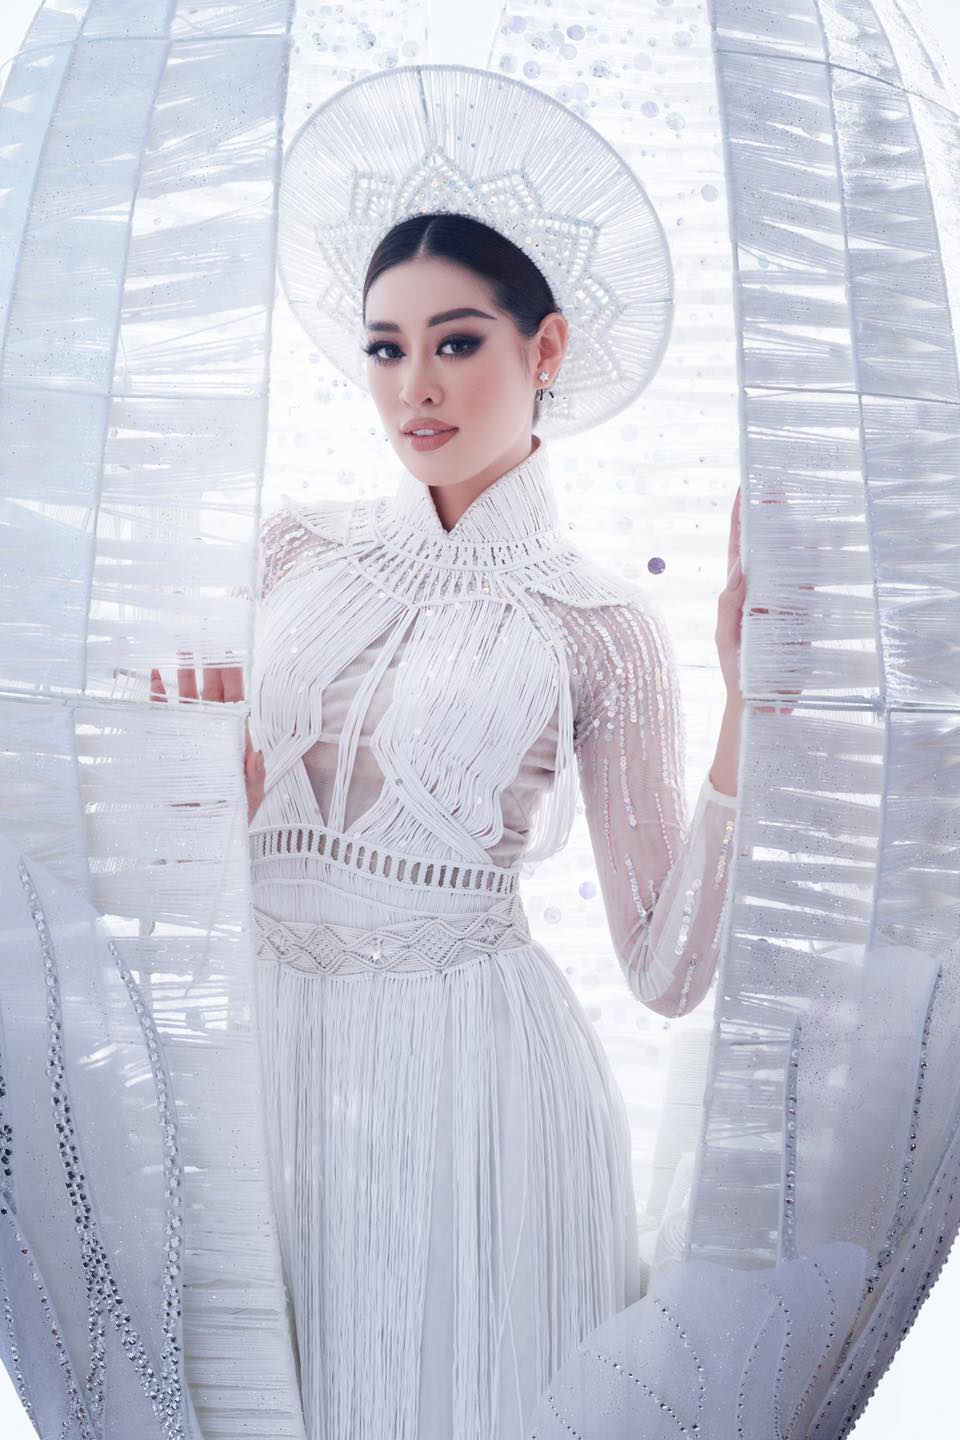 Hoa hau Khanh Van0 Hoa hậu Khánh Vân được vinh danh vào Top 20 Hoa hậu của các Hoa hậu